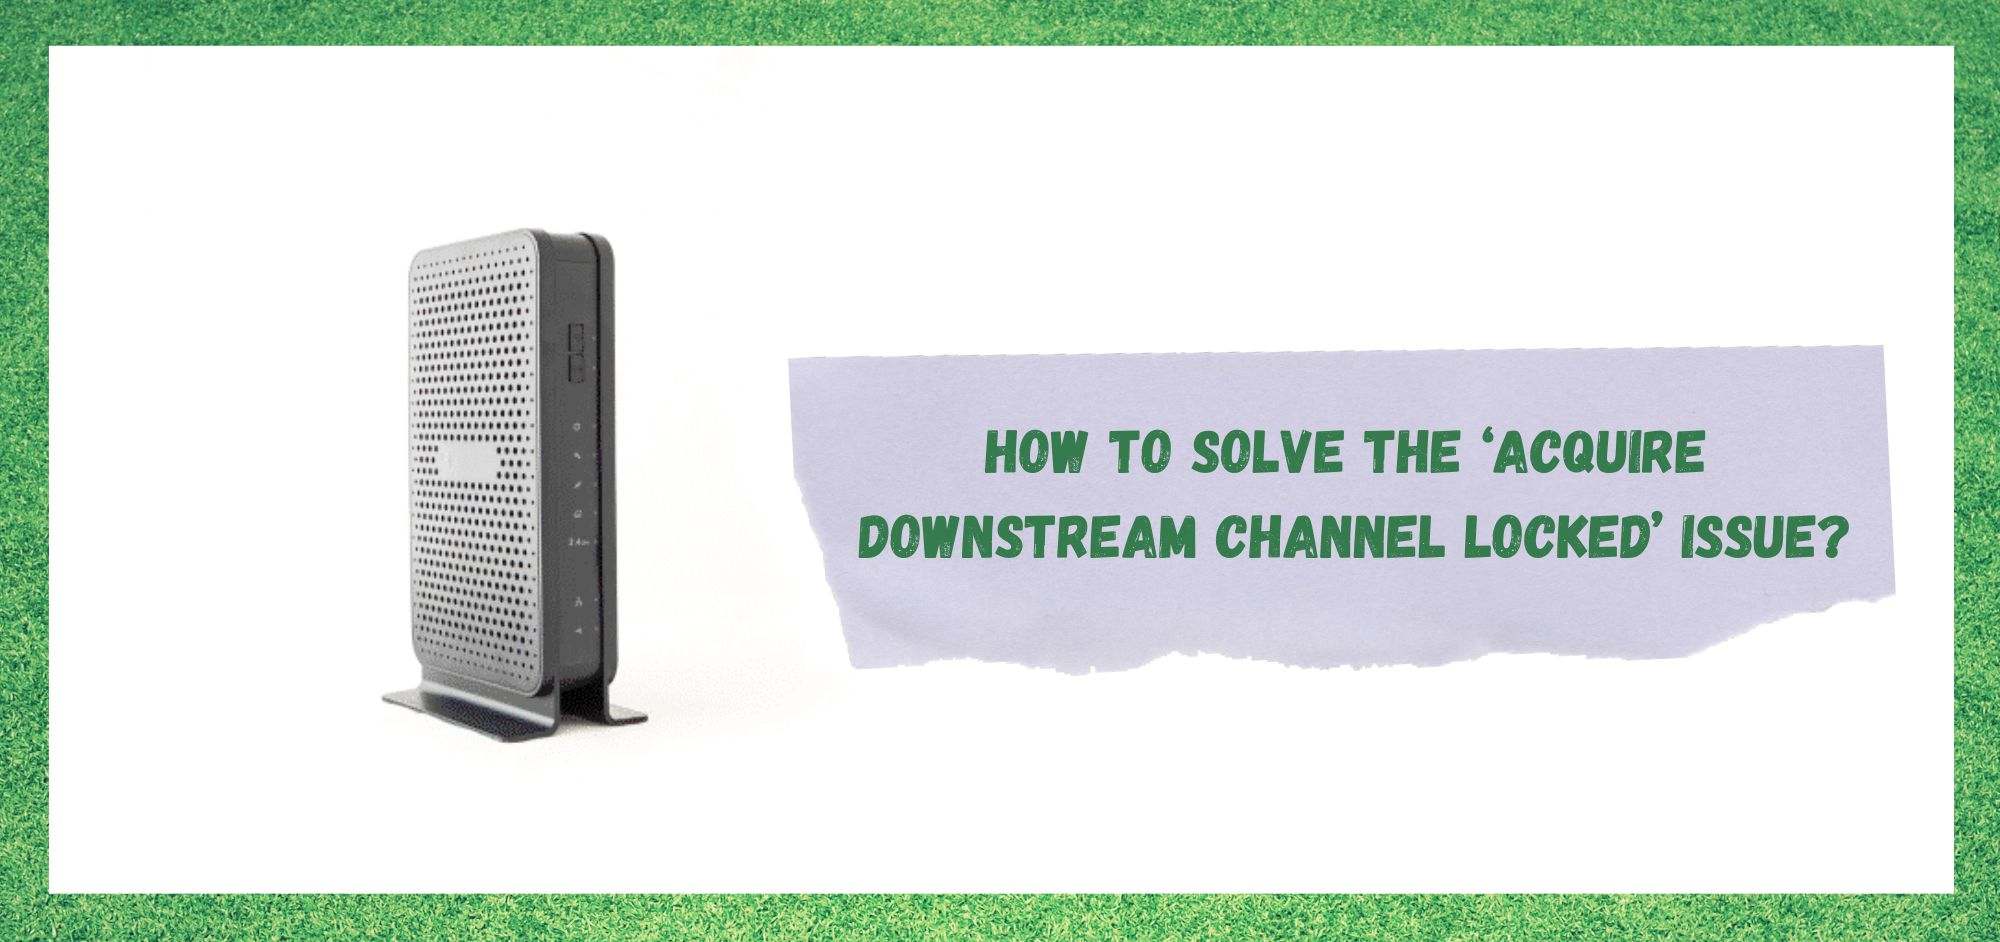 Acquire Downstream Channel Locked: 7 Wege zur Lösung